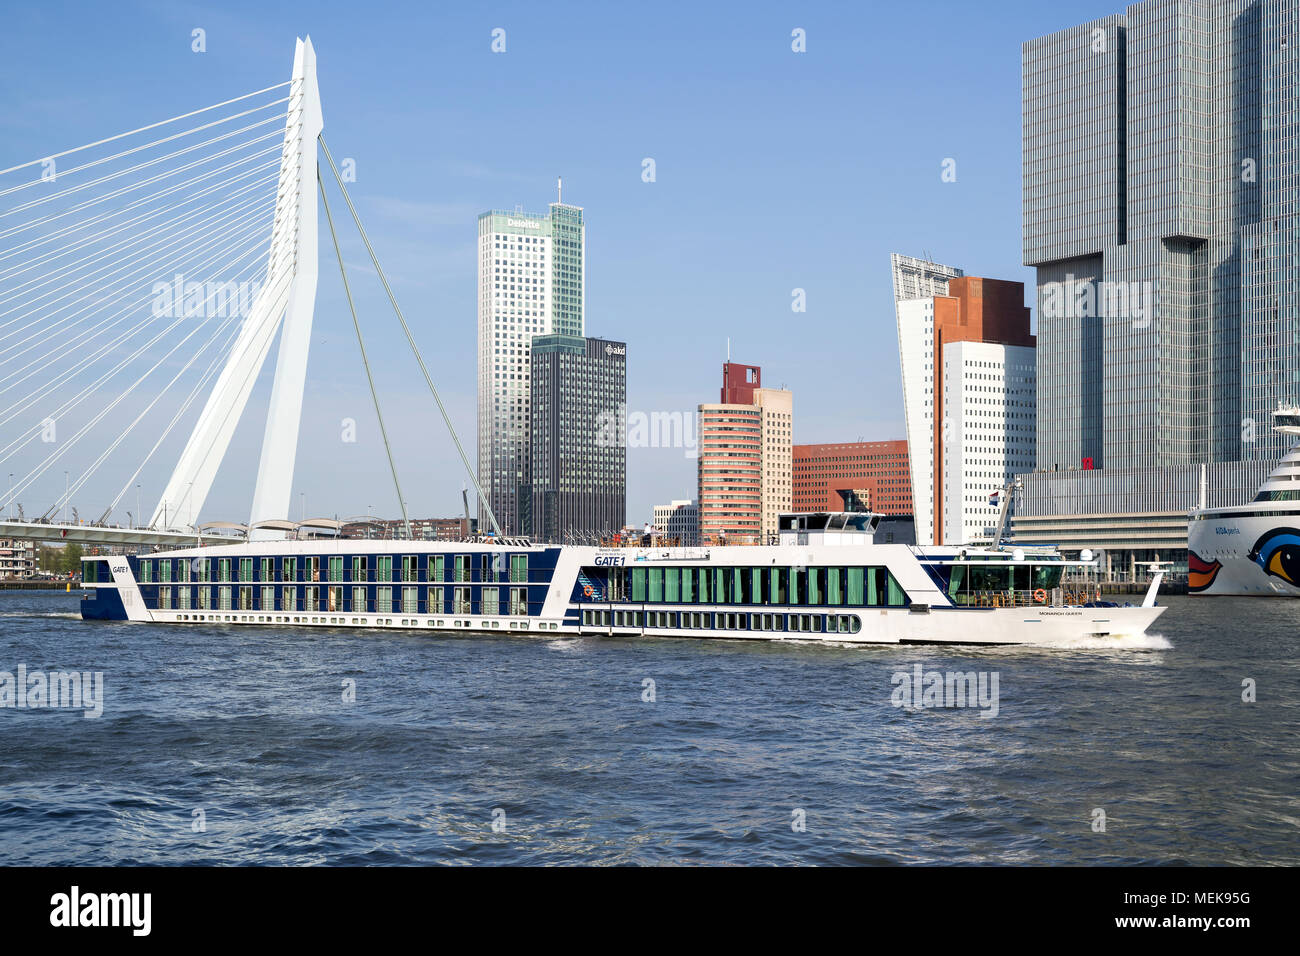 River Cruise Ship MONARCH KÖNIGIN von Tor 1 auf dem Fluss Nieuwe Maas in Rotterdam, Niederlande Stockfoto